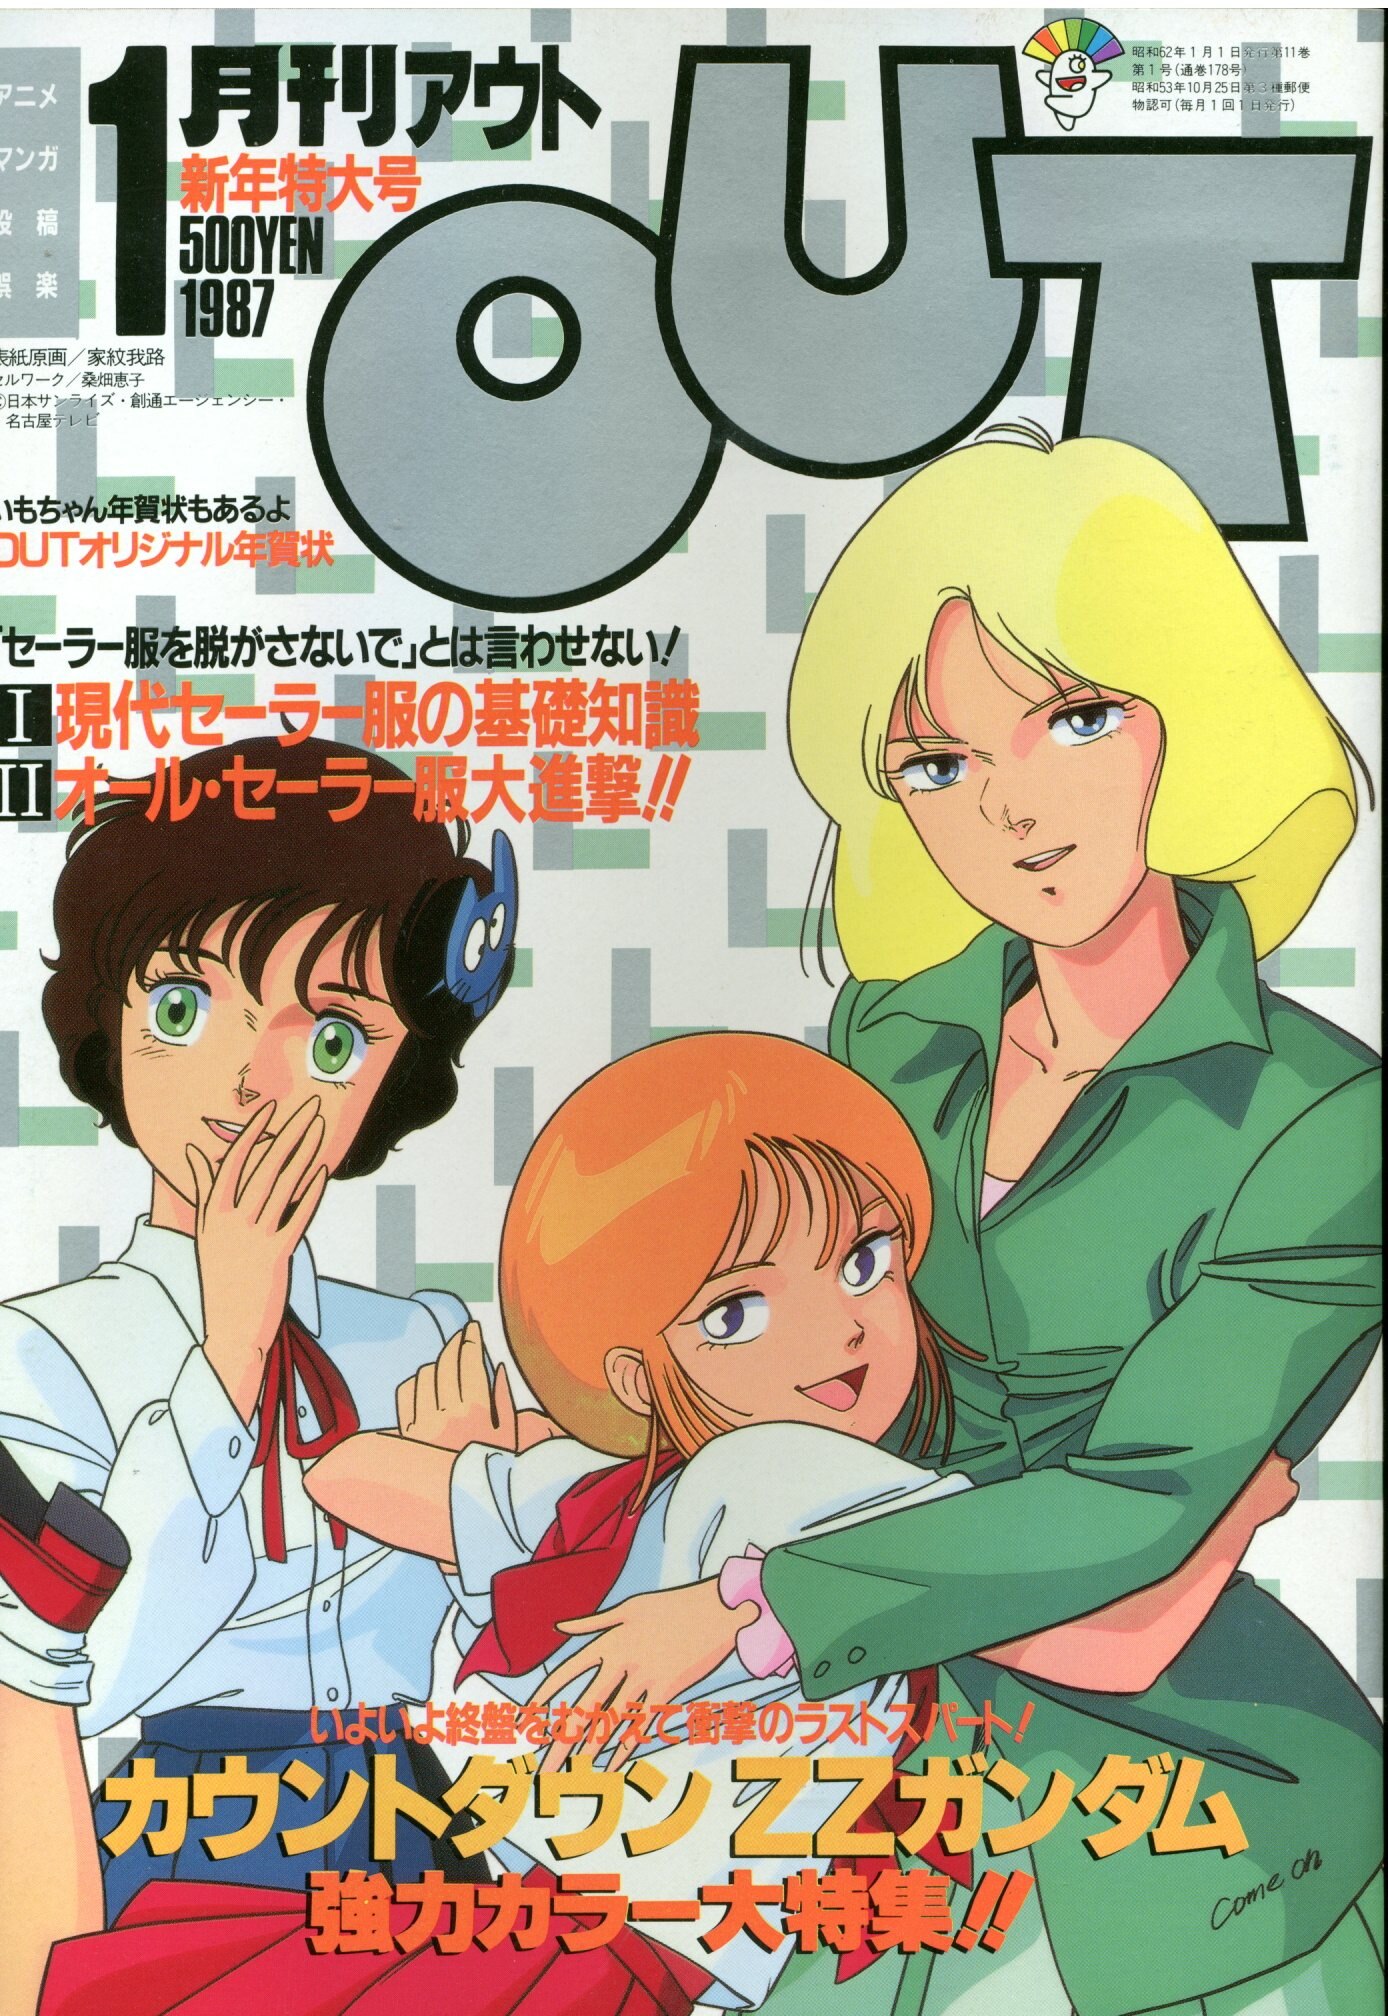 みのり書房 1987年 昭和62年 のアニメ情報誌 本誌のみ 月刊out1987年 昭和62年 1月号 8701 まんだらけ Mandarake